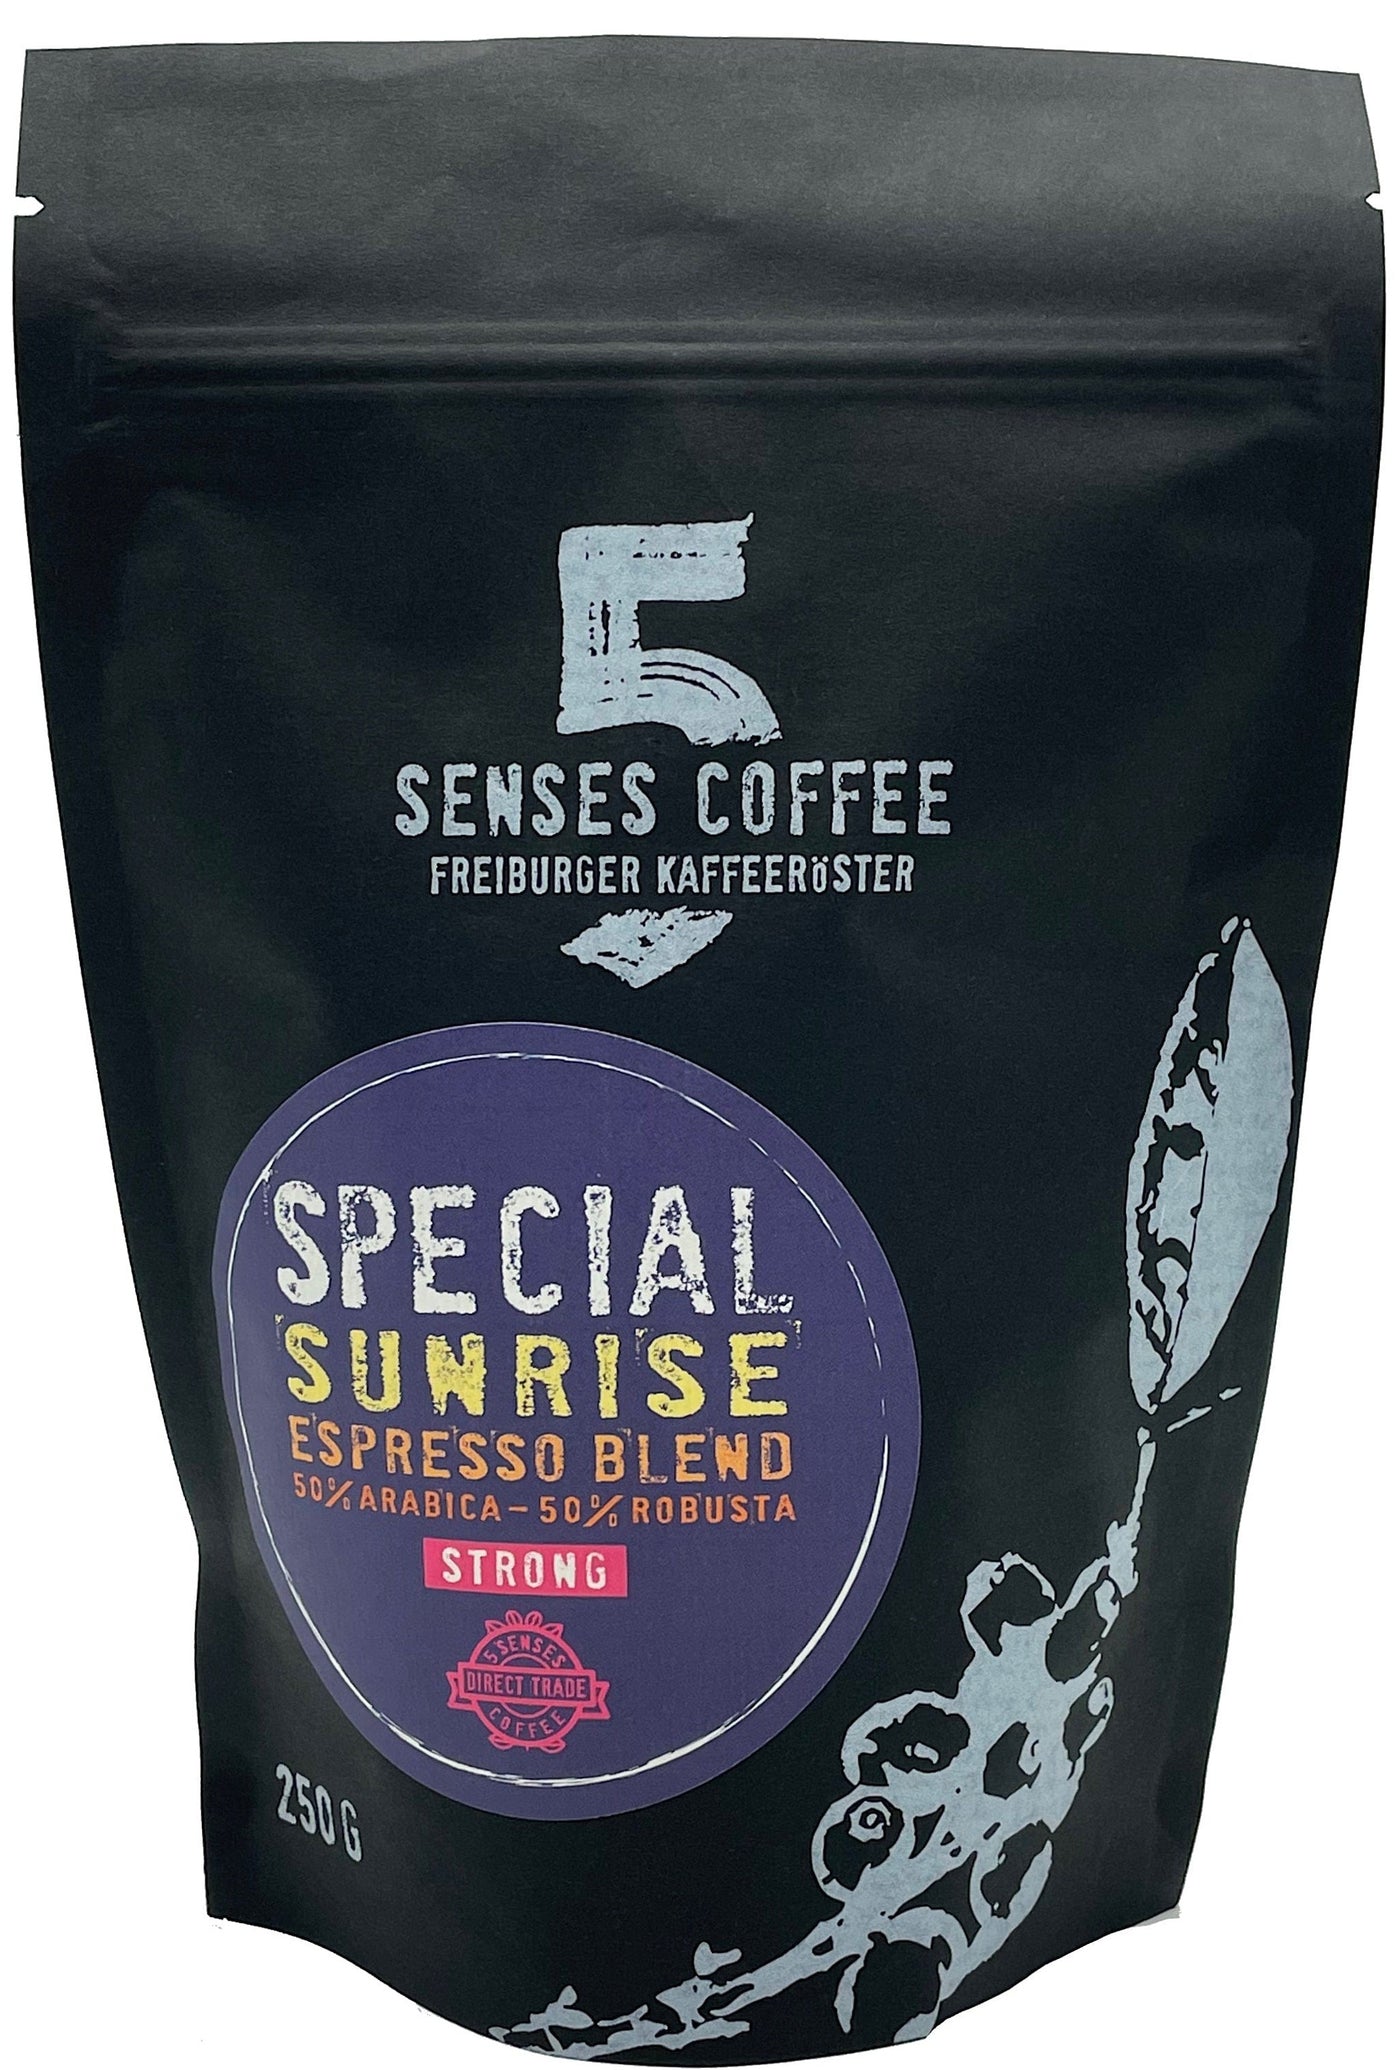 5 SENSES SPECIAL SUNRISE ESPRESSO BLEND (BIO) 5 Senses Coffee